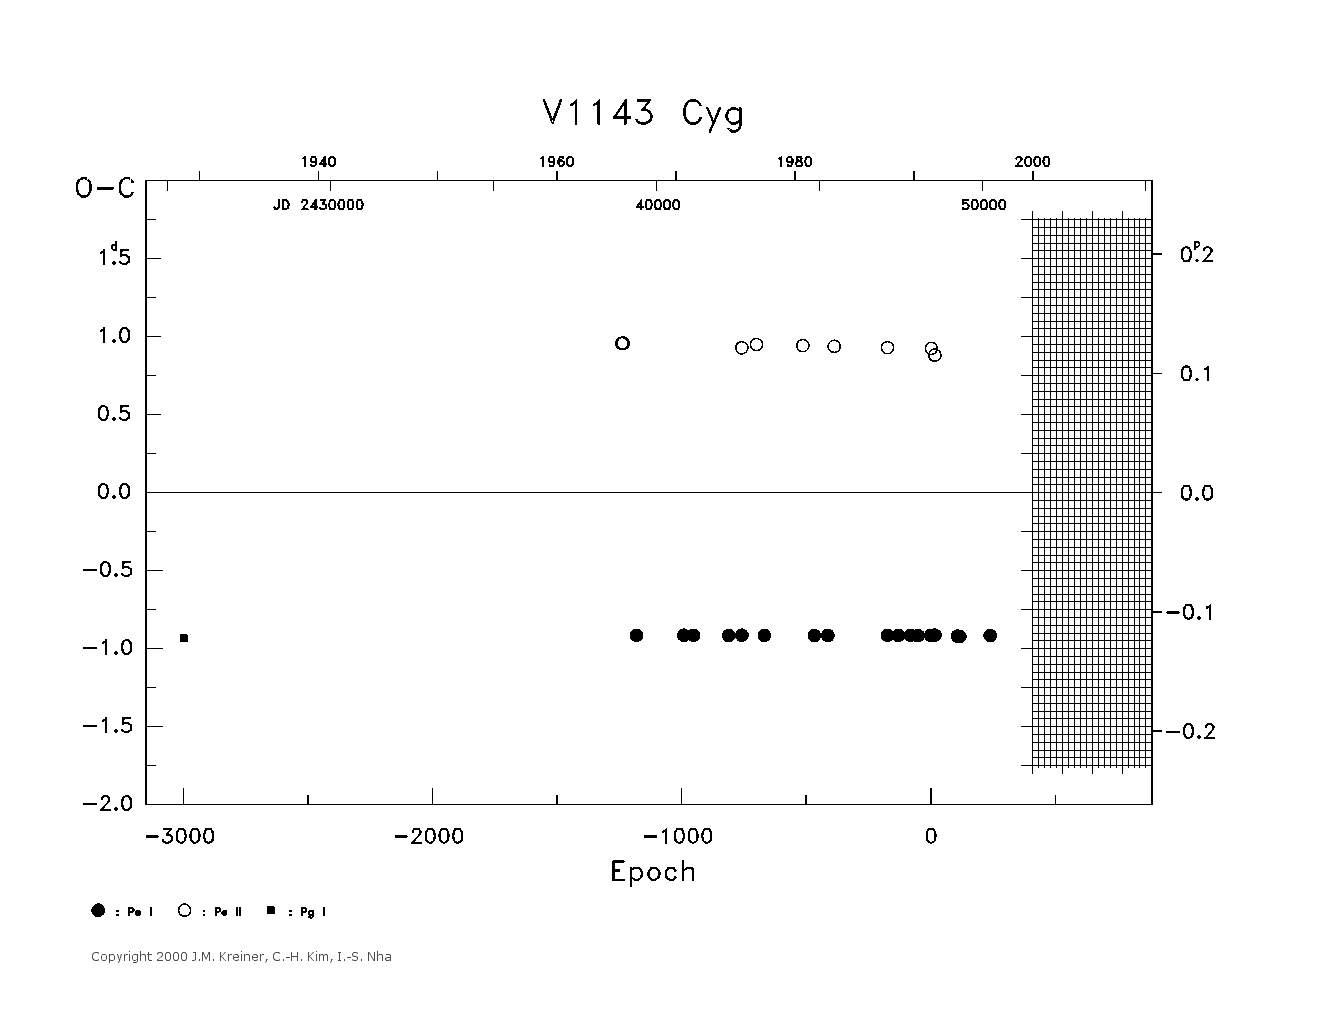 [IMAGE: large V1143 CYG O-C diagram]